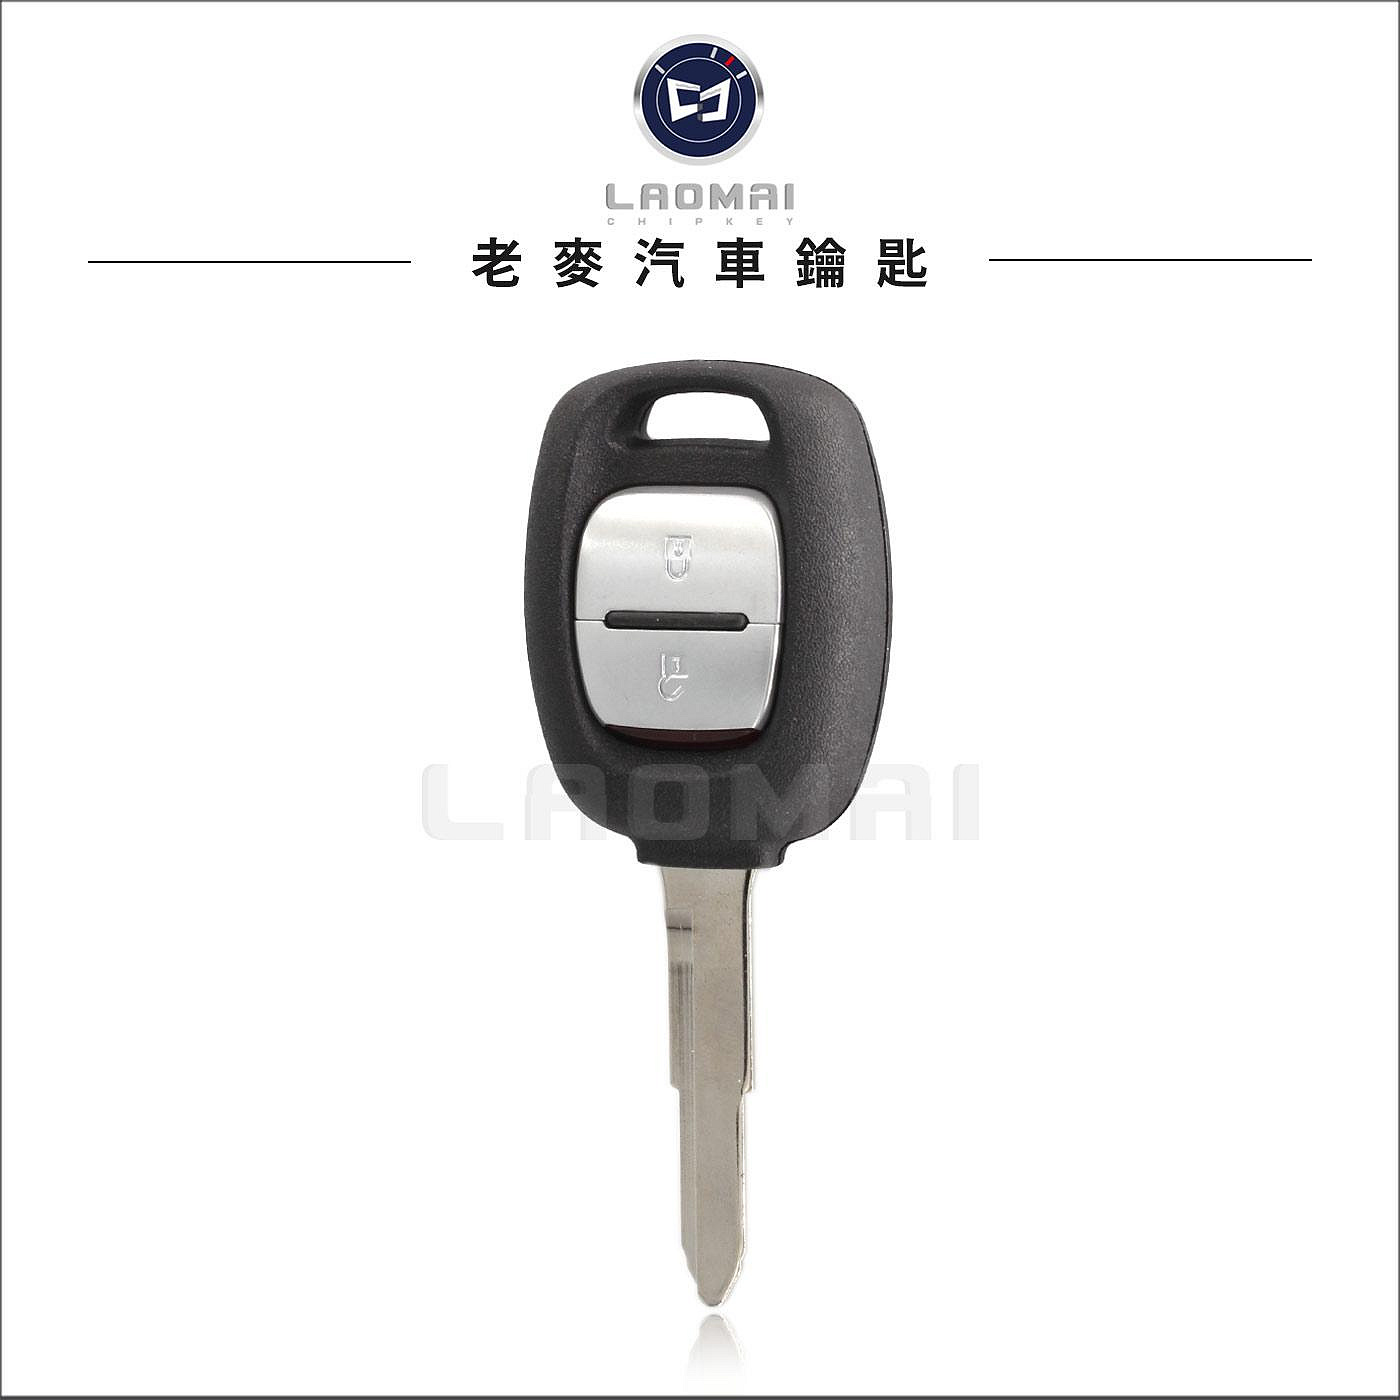 [ 老麥汽車鑰匙 ] 三菱得利卡Delica 汽車鑰匙拷貝 貨車鑰匙 遙控型鑰匙複製 廂型車鎖打鎖匙